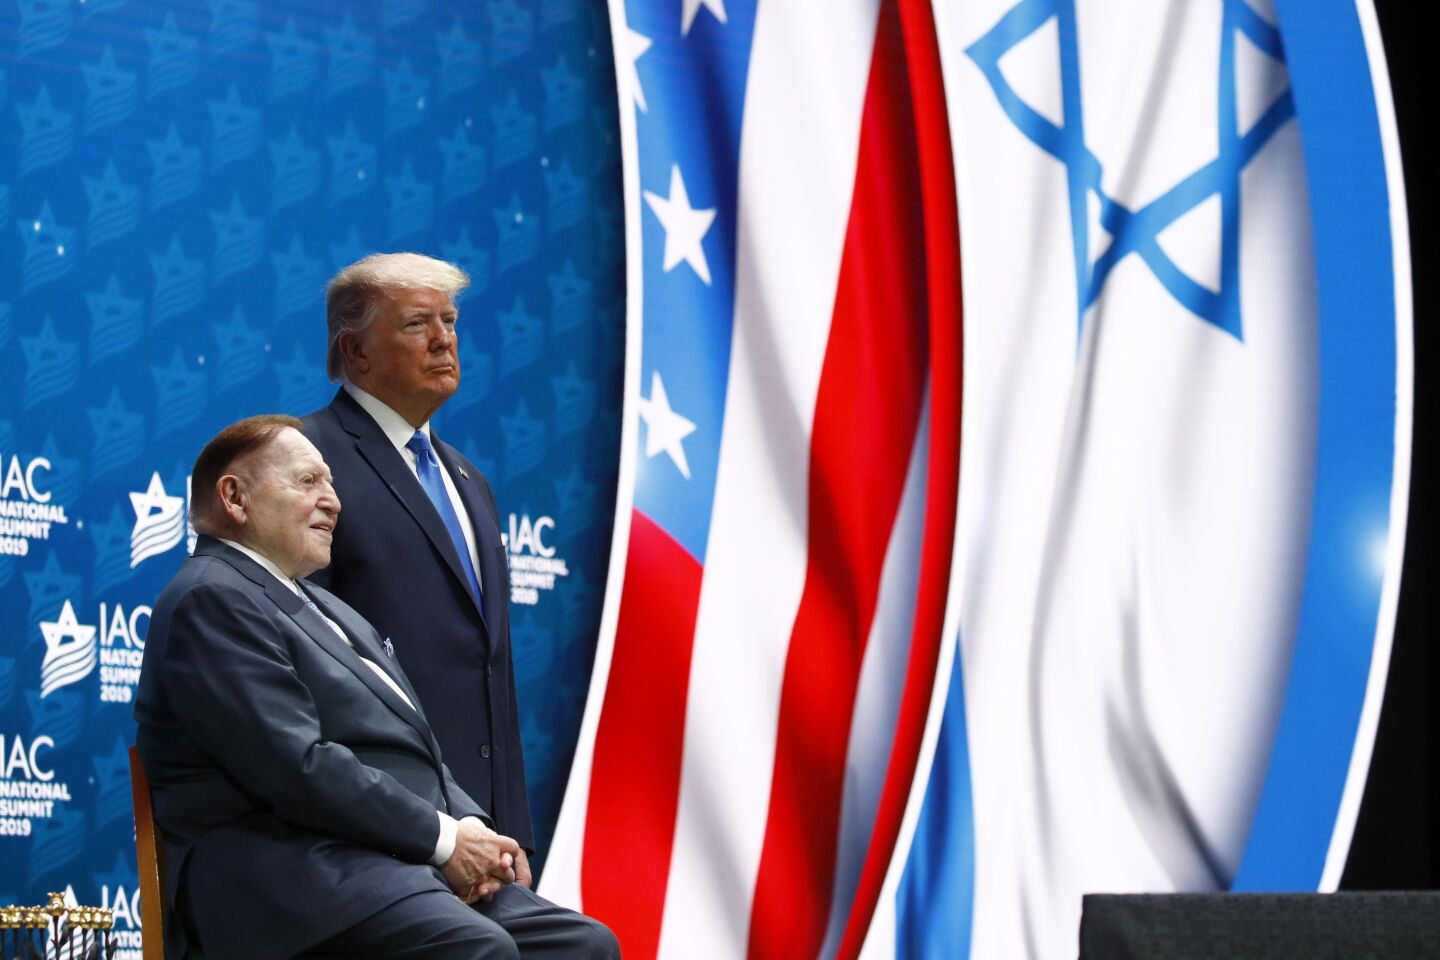 President Trump stands alongside mega donor Sheldon Adelson